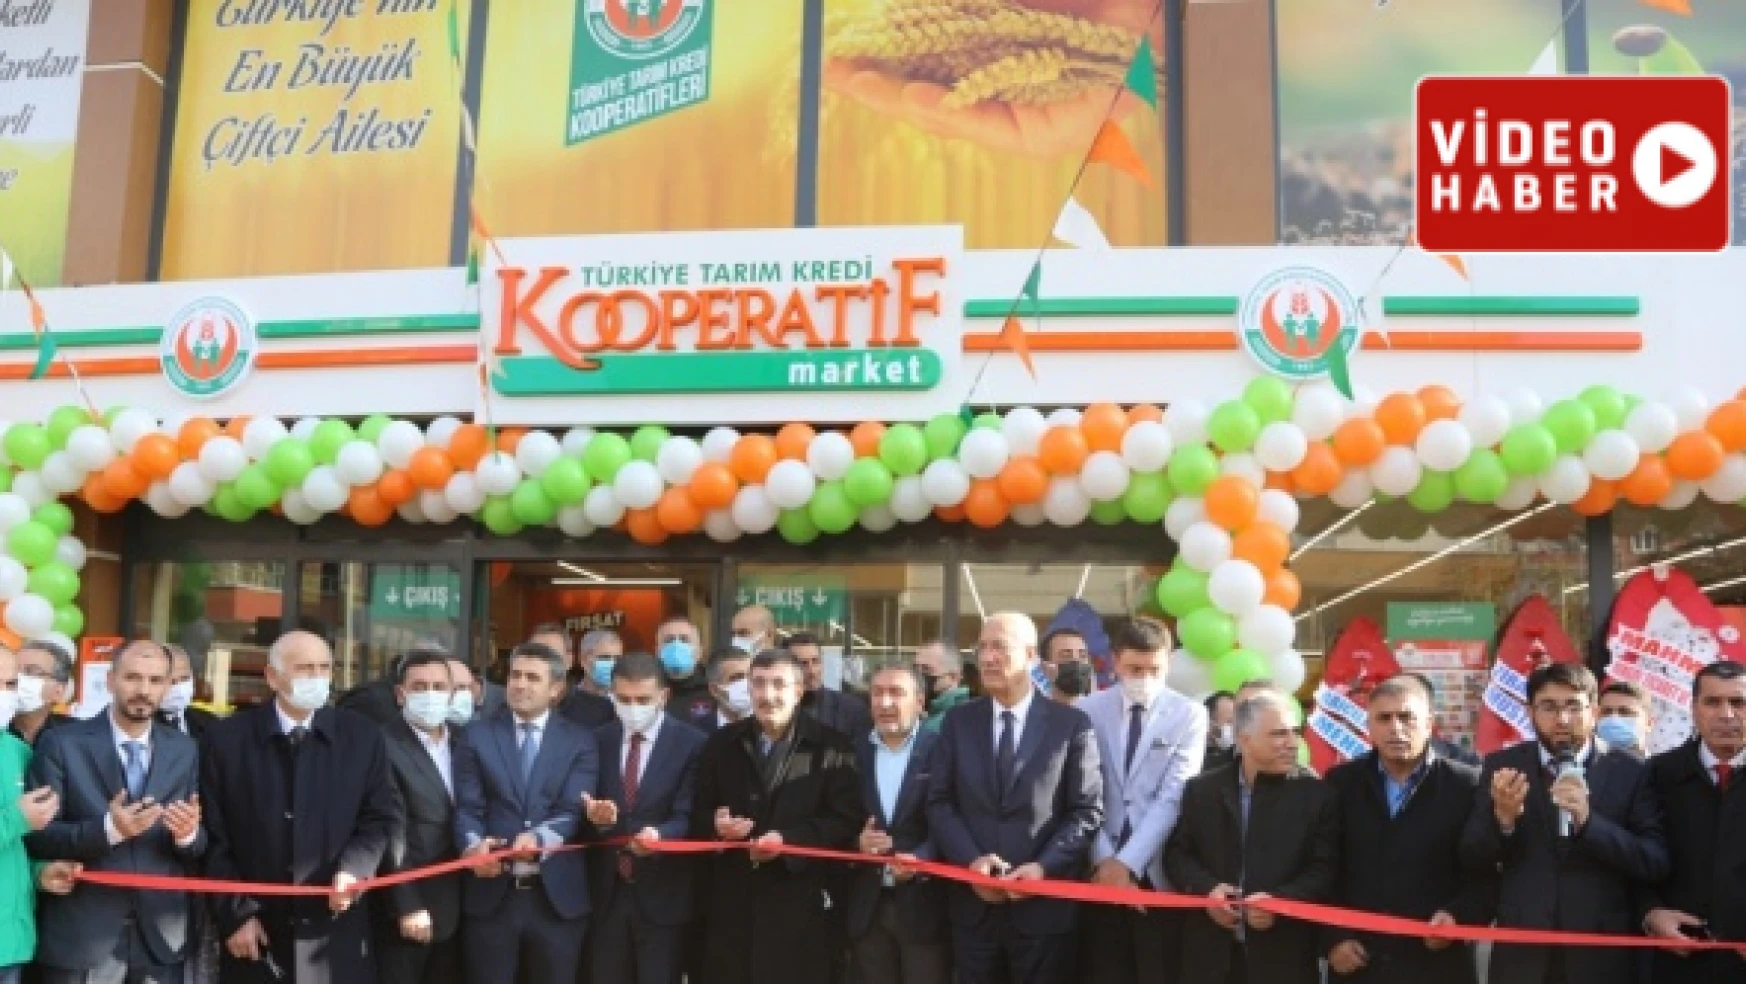 Bingöl'de Tarım Kredi Kooperatif Market'i açıldı